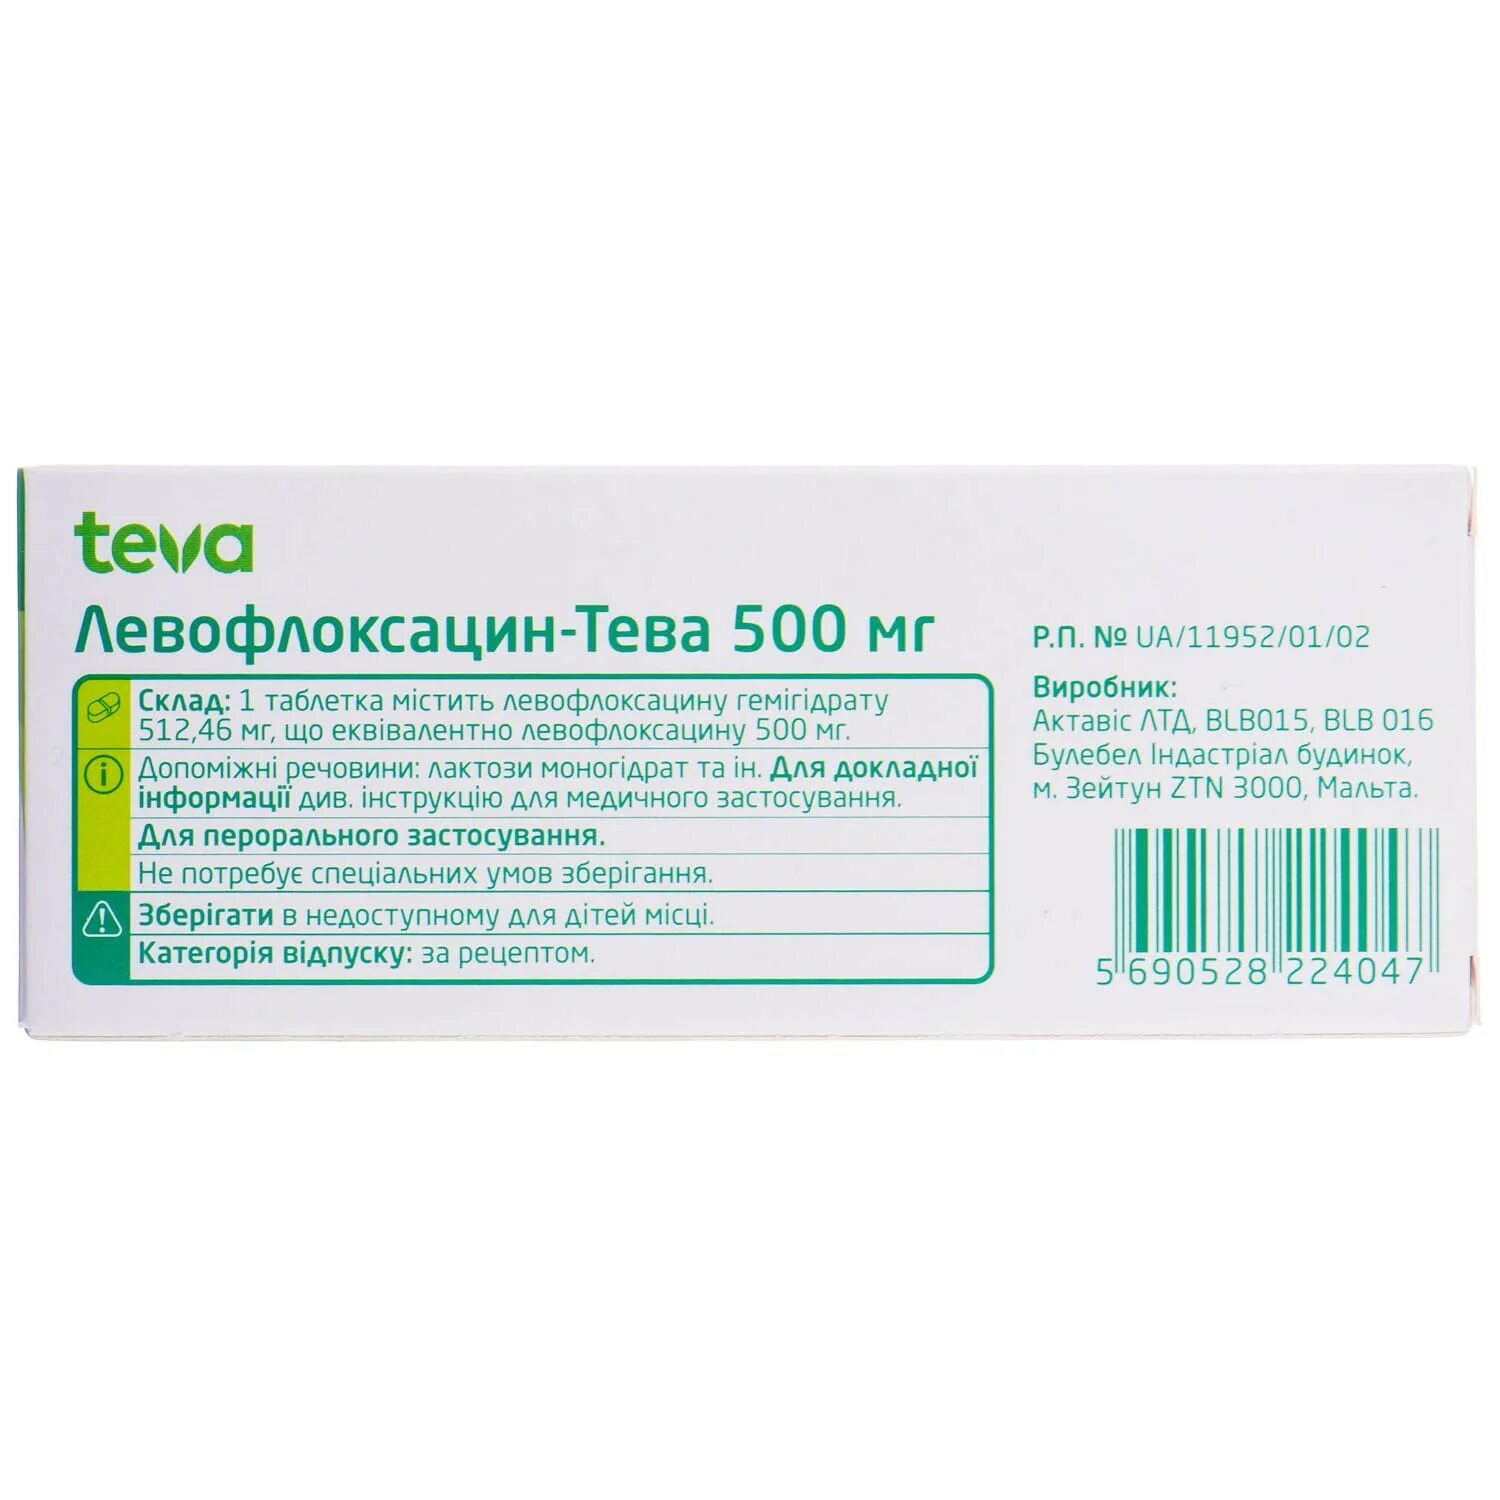 Антибиотик Левофлоксацин 500. Левофлоксацин-Тева 500. Антибиотик Левофлоксацин 500 мг. Левофлоксацин Teva.